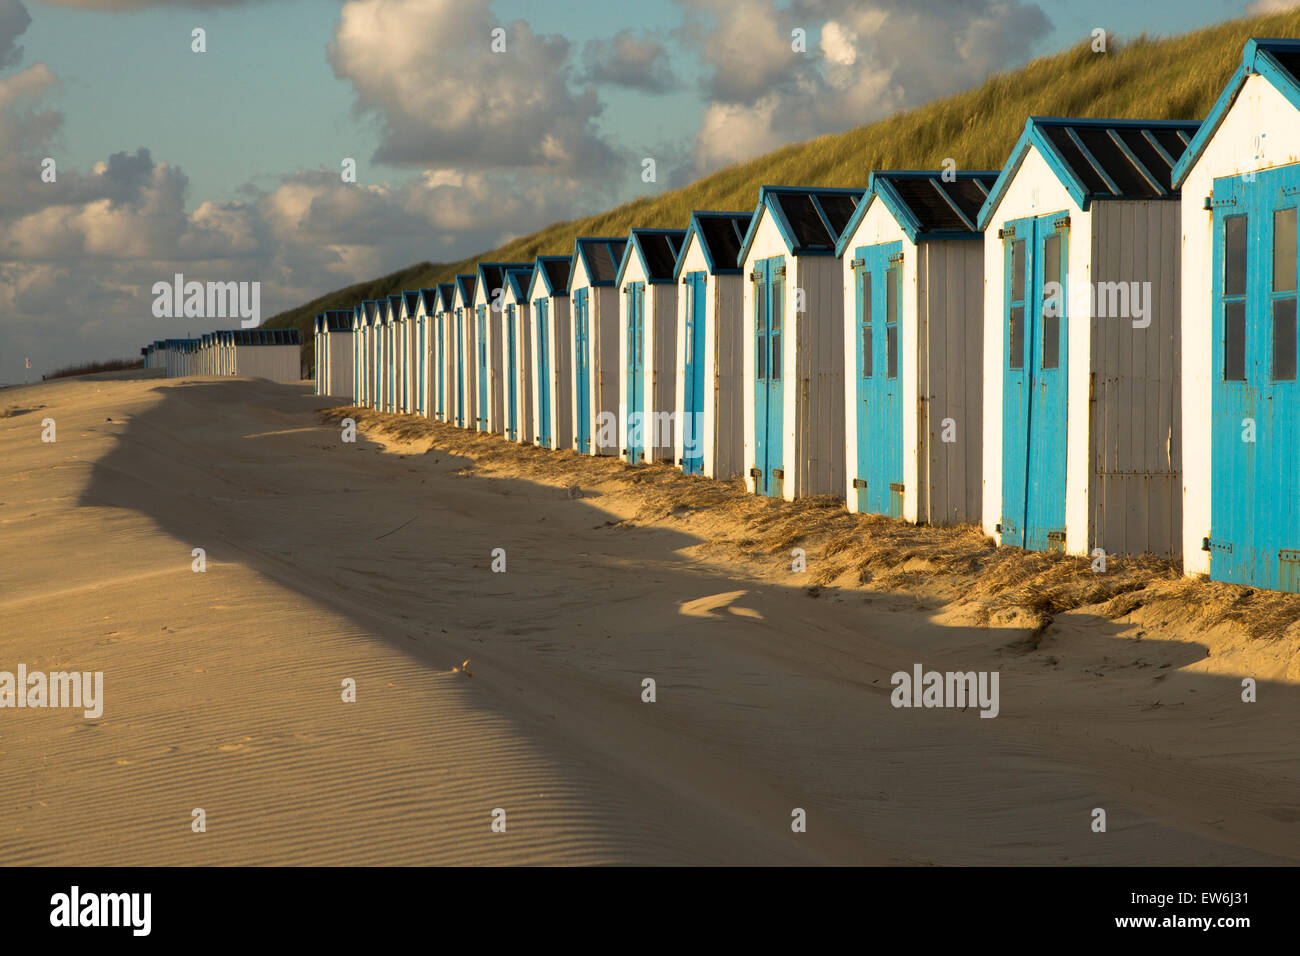 Bianco e blu case sulla spiaggia dell'isola di Texel in Olanda. Foto Stock